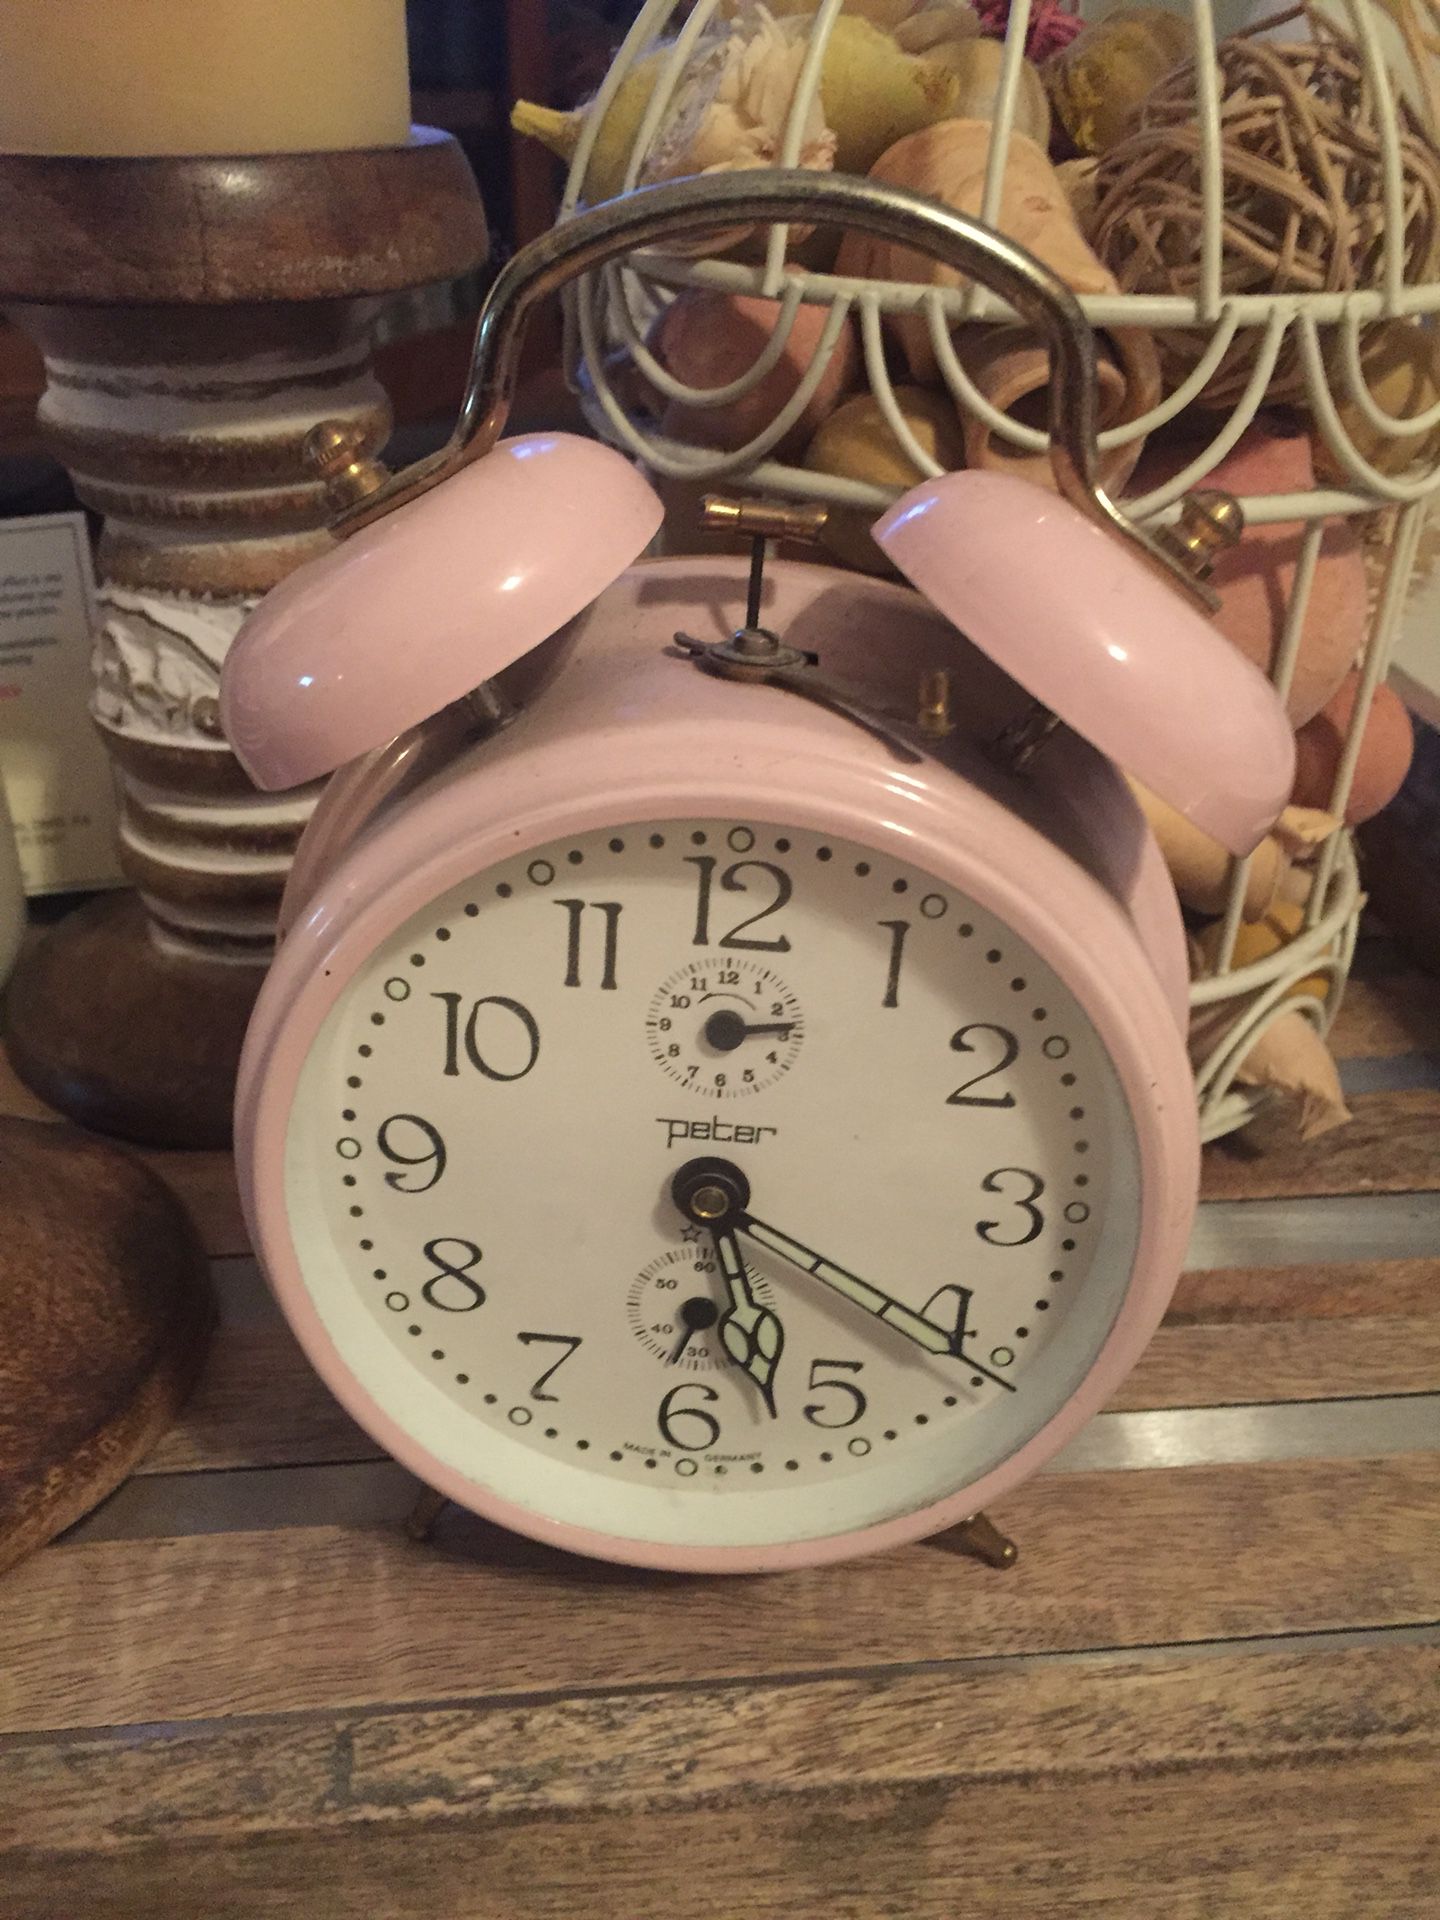 Antique peter alarm clock